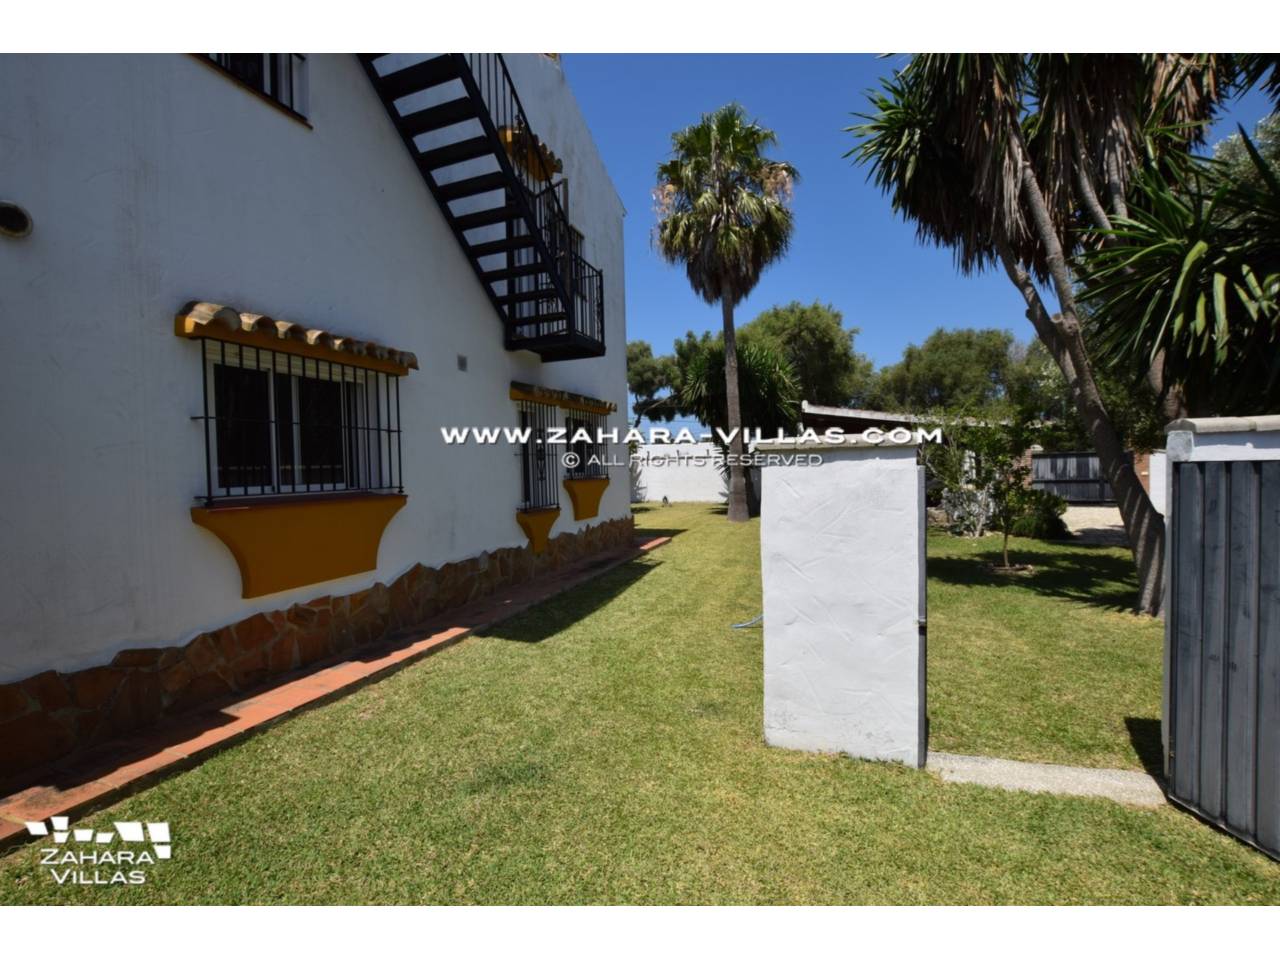 Imagen 3 de Haus zum verkauf in Zahora ( Los Caños de Meca )